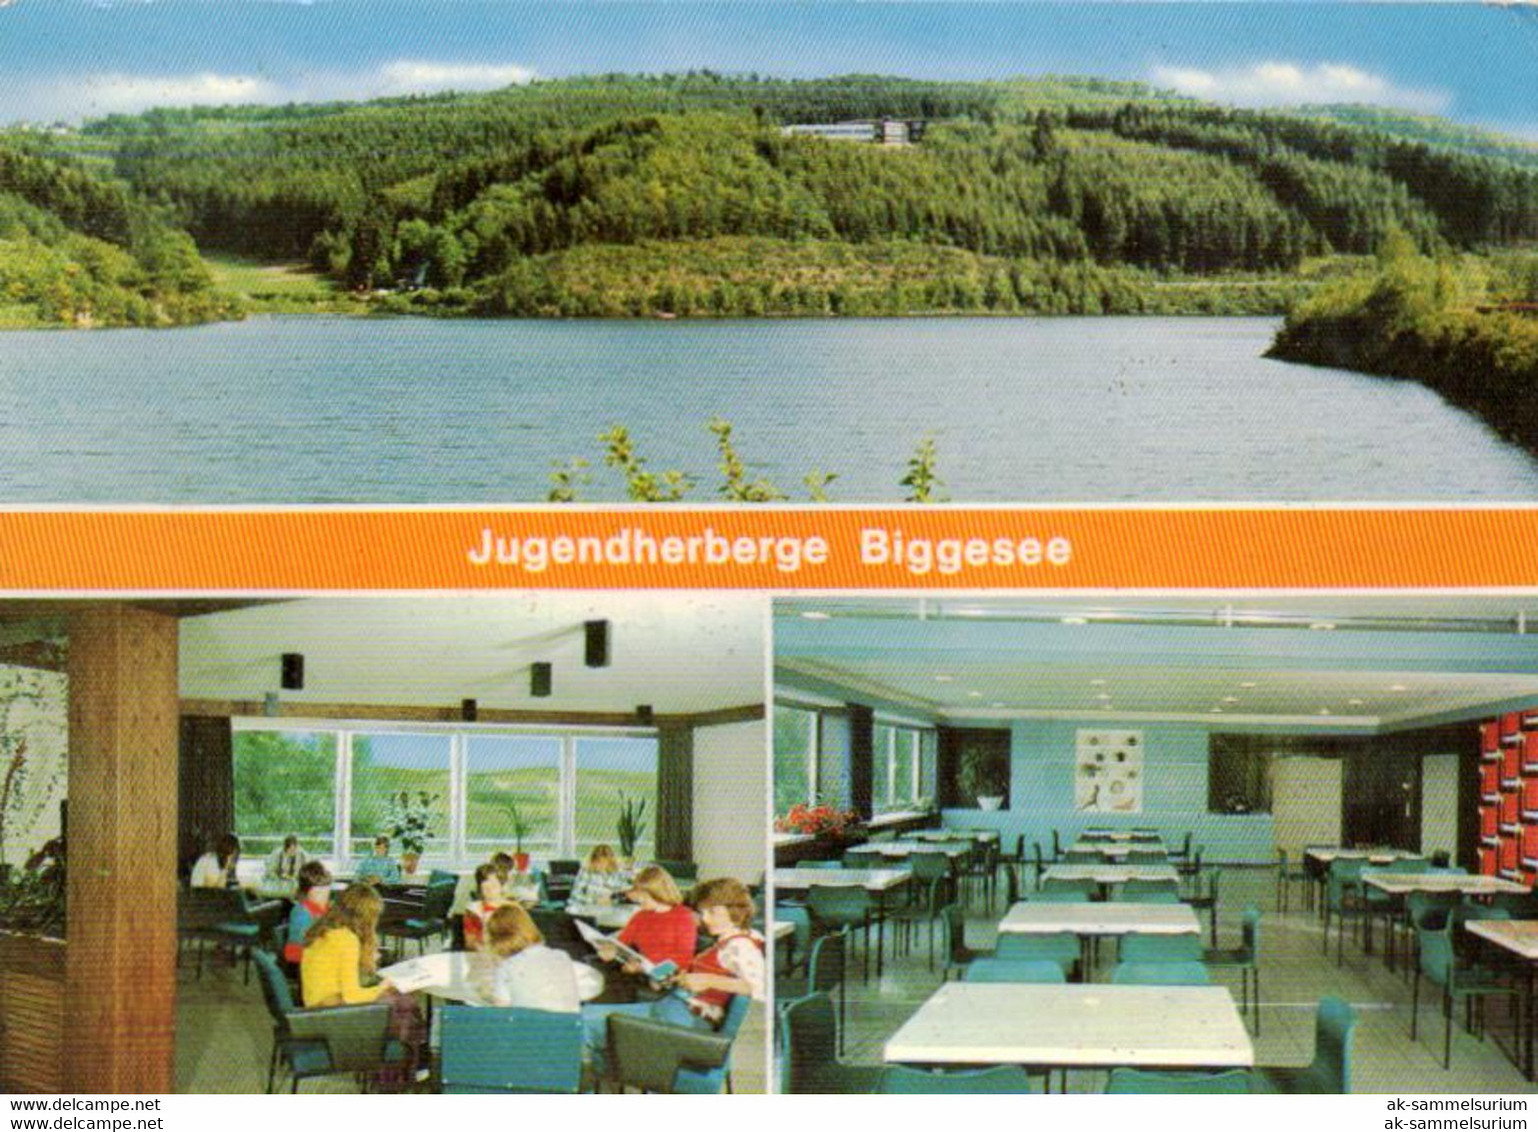 Olpe / Biggesee / Jugendherberge (D-A352) - Olpe